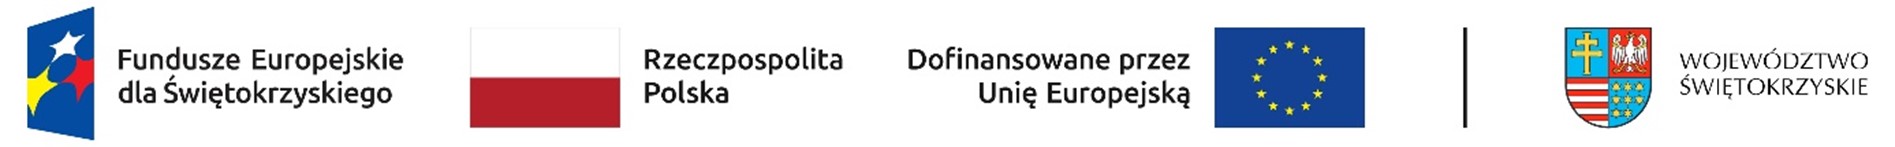 Logotypy Fundusze Europejskie dla Świętokrzyskiego, Dofinansowane przez Unię Europejską, Rzeczpospolita Polska, Województwo Świętokrzyskie